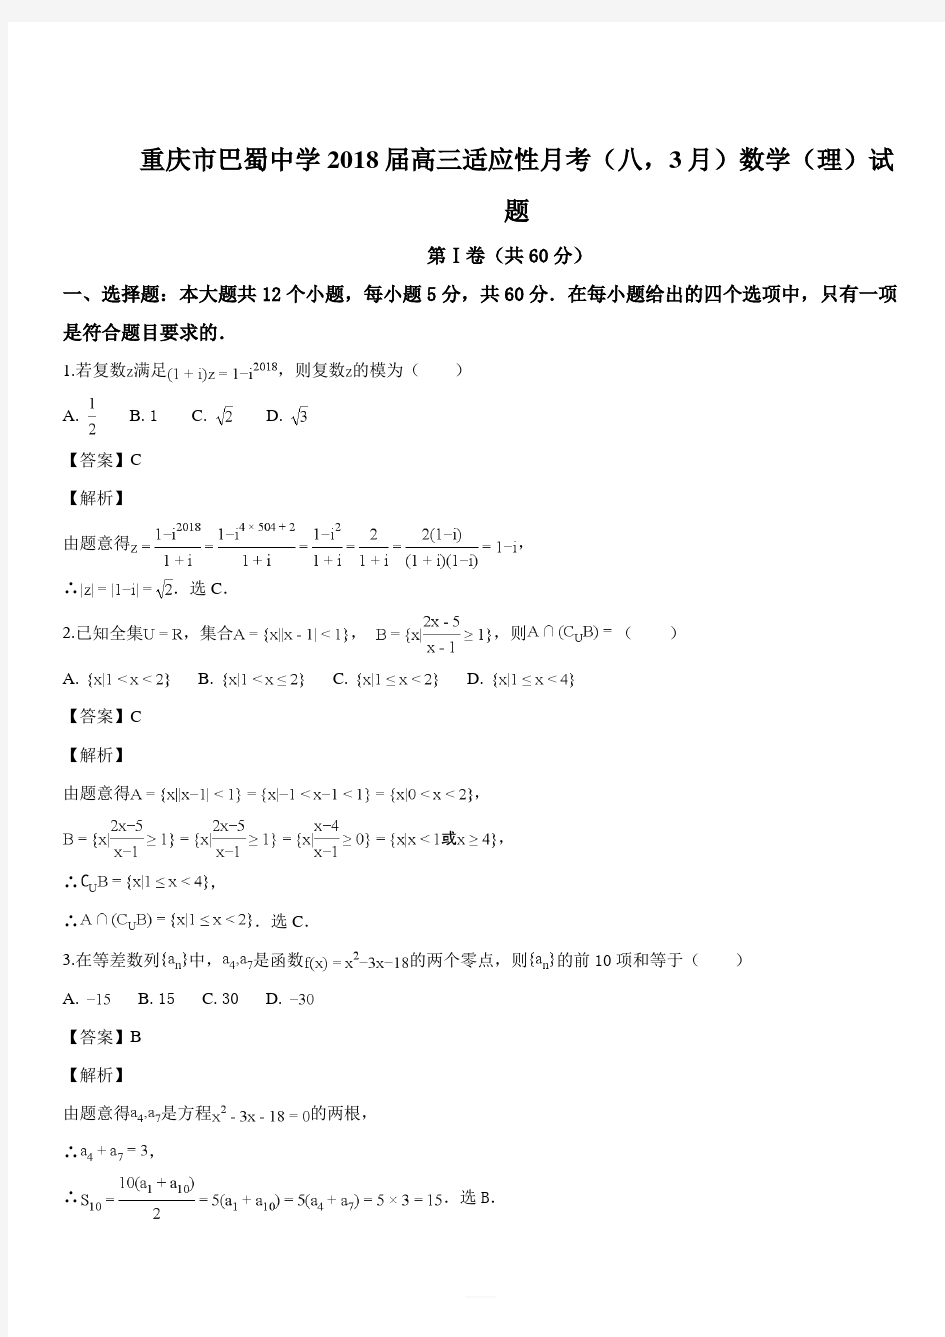 重庆市巴蜀中学2018届高三适应性月考(八,3月)数学(理)试题(解析版)